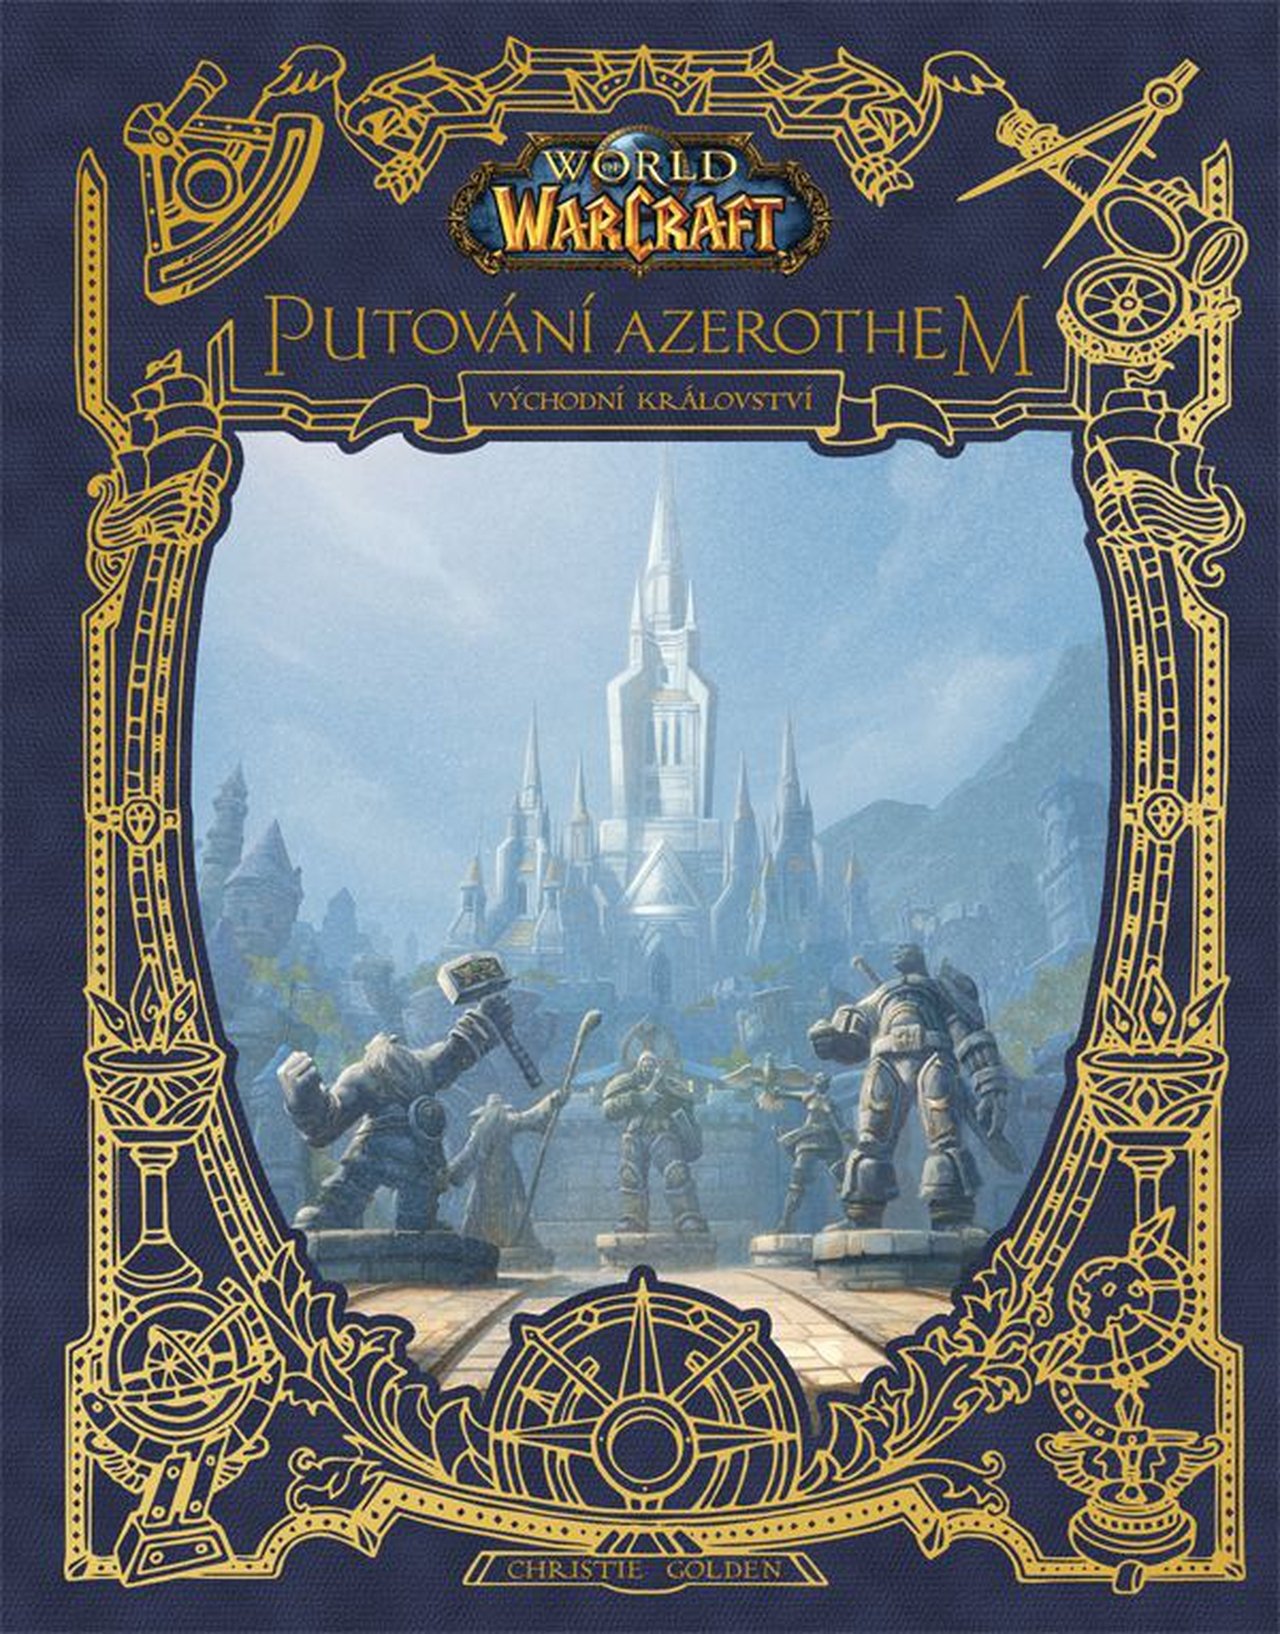 World of Warcraft: Putování Azerothem 1 - Východní království - Christie Golden